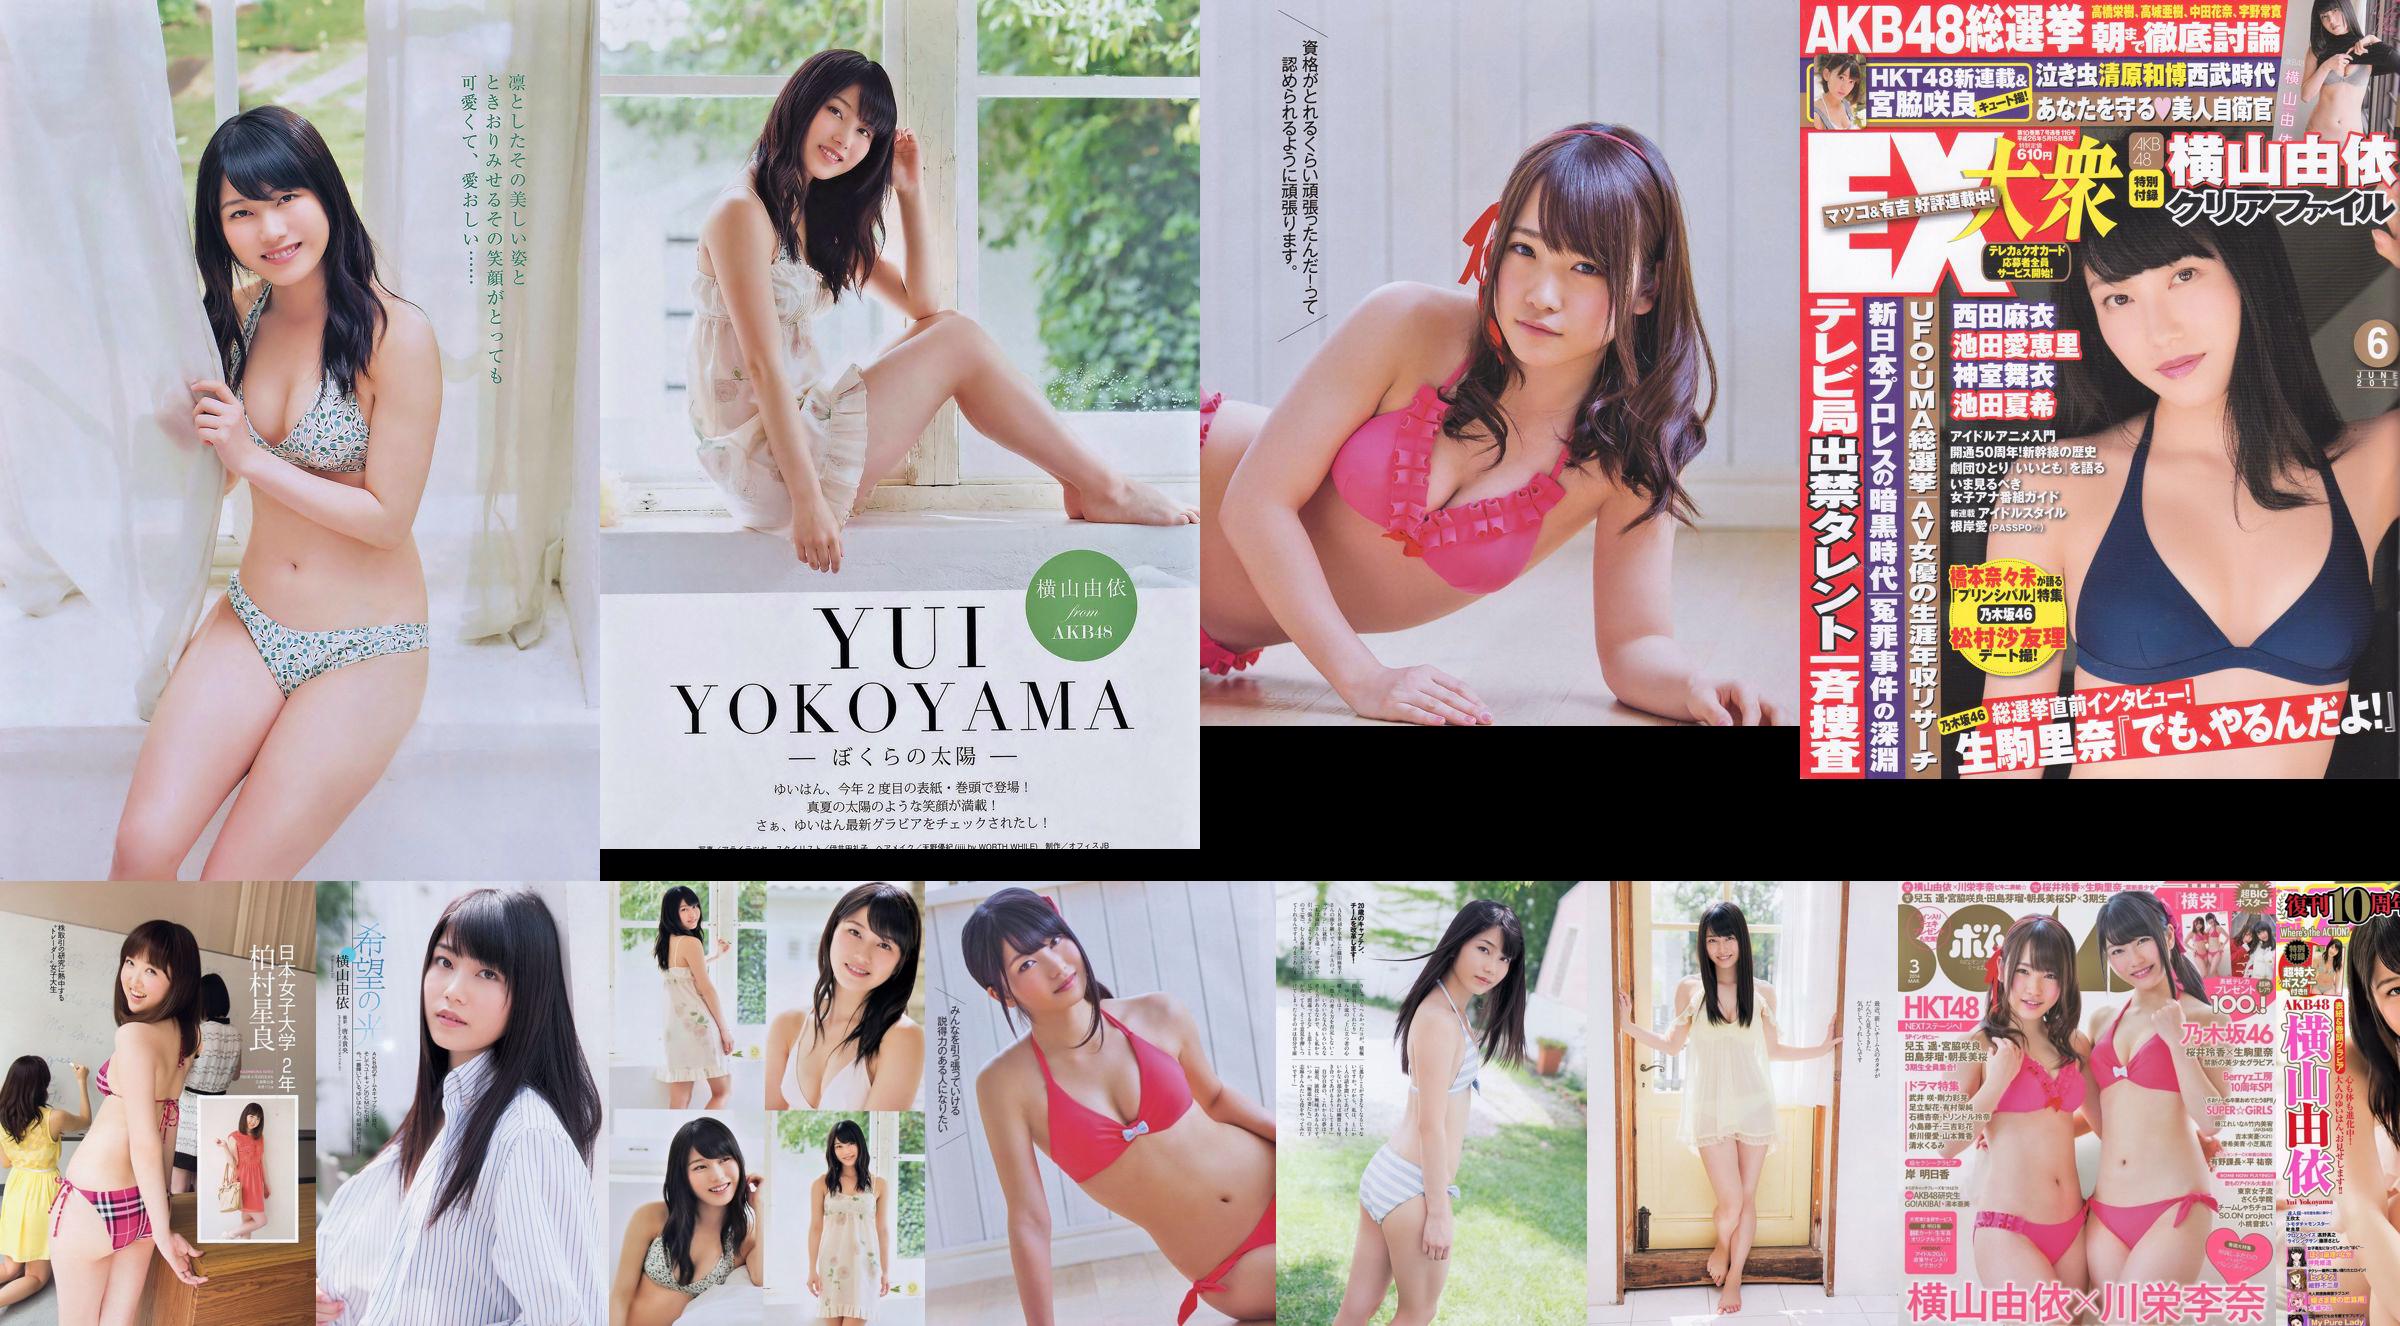 [Bomb Magazine] 2014 No.03 Yui Yokoyama Rina Kawaei Foto No.cc09ab Seite 1